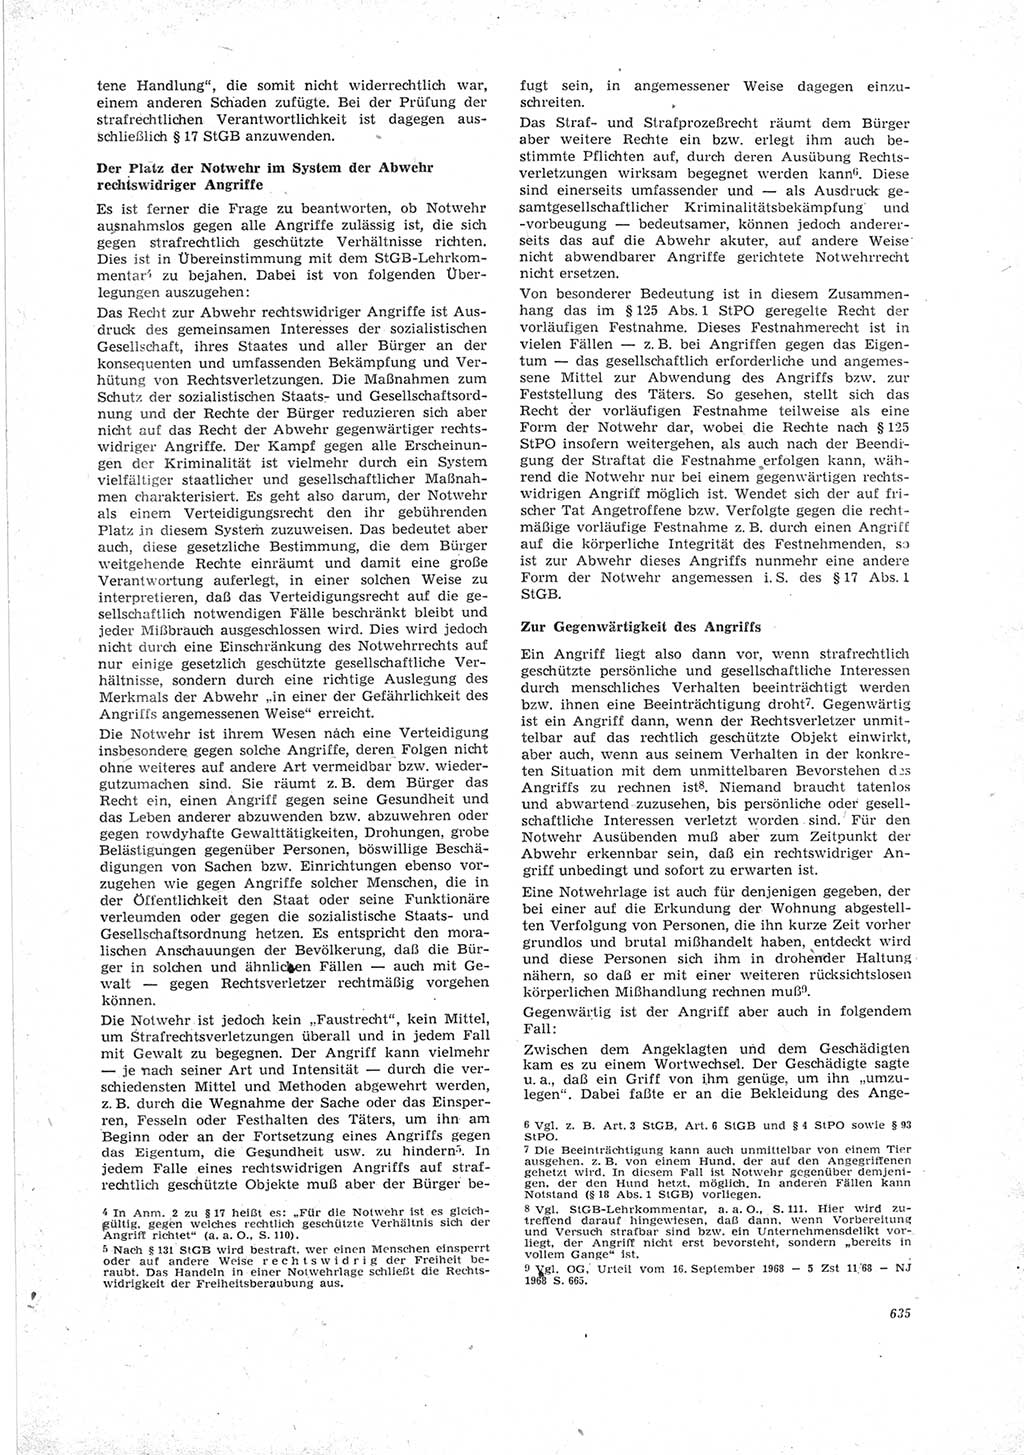 Neue Justiz (NJ), Zeitschrift für Recht und Rechtswissenschaft [Deutsche Demokratische Republik (DDR)], 23. Jahrgang 1969, Seite 635 (NJ DDR 1969, S. 635)